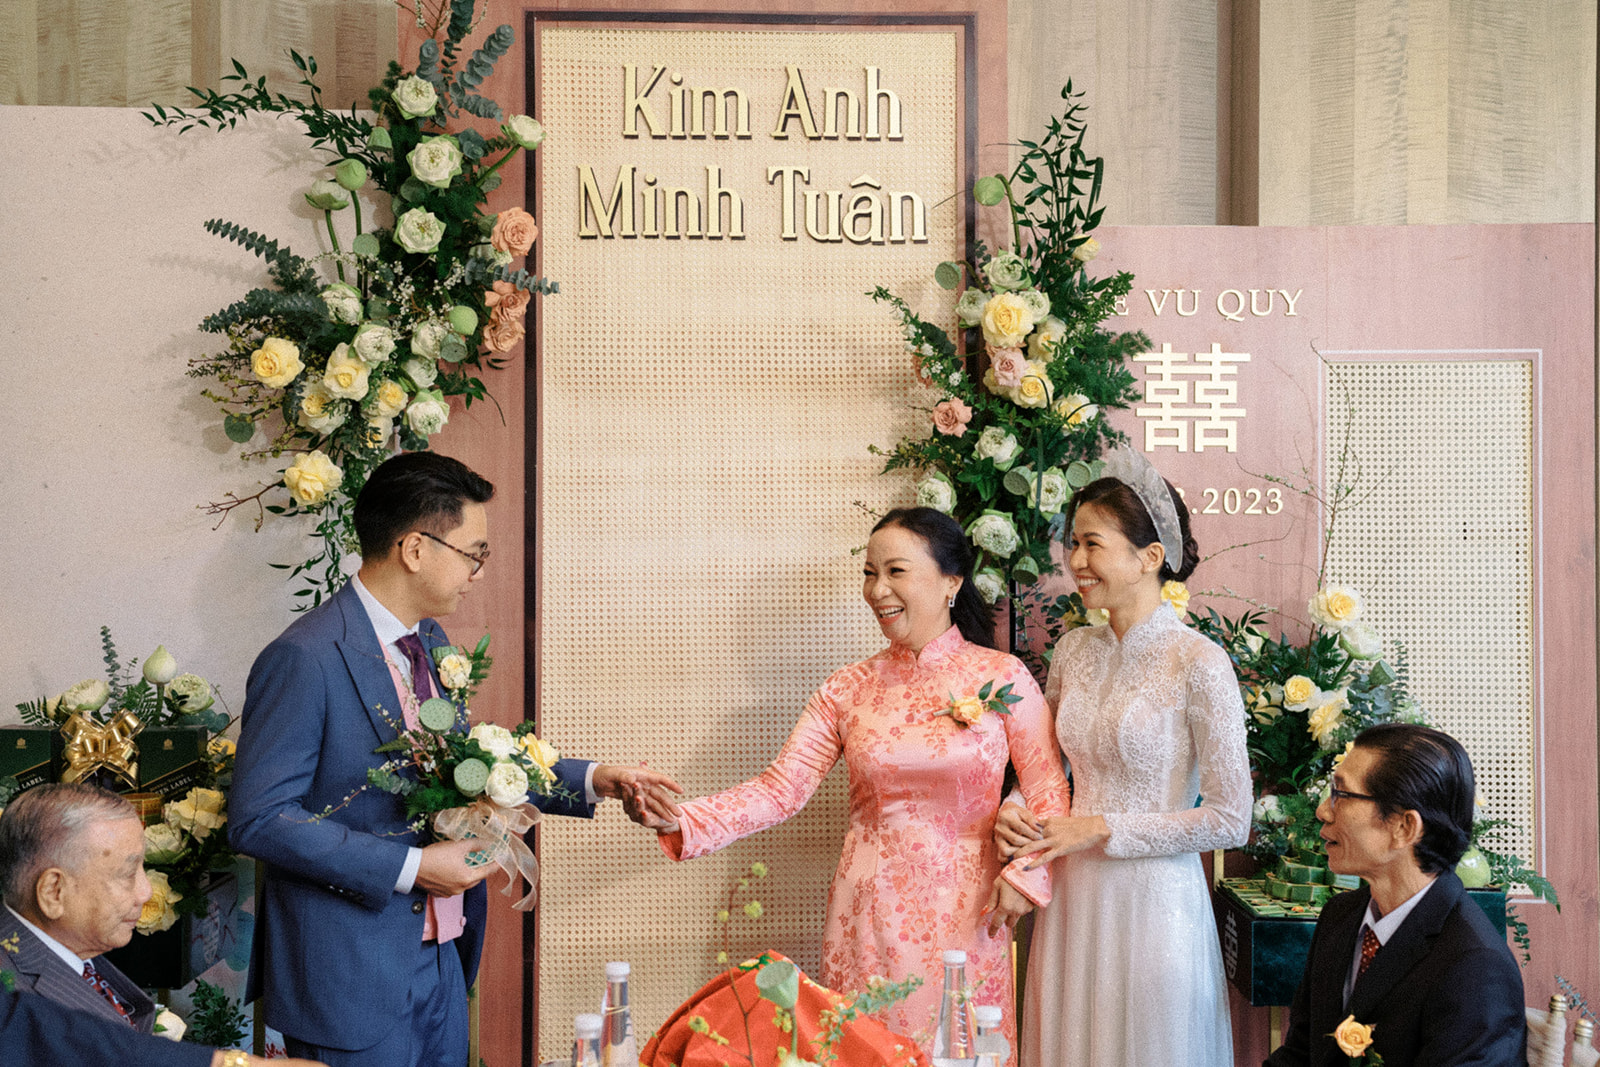 Tradtional wedding ceremony in Saigon